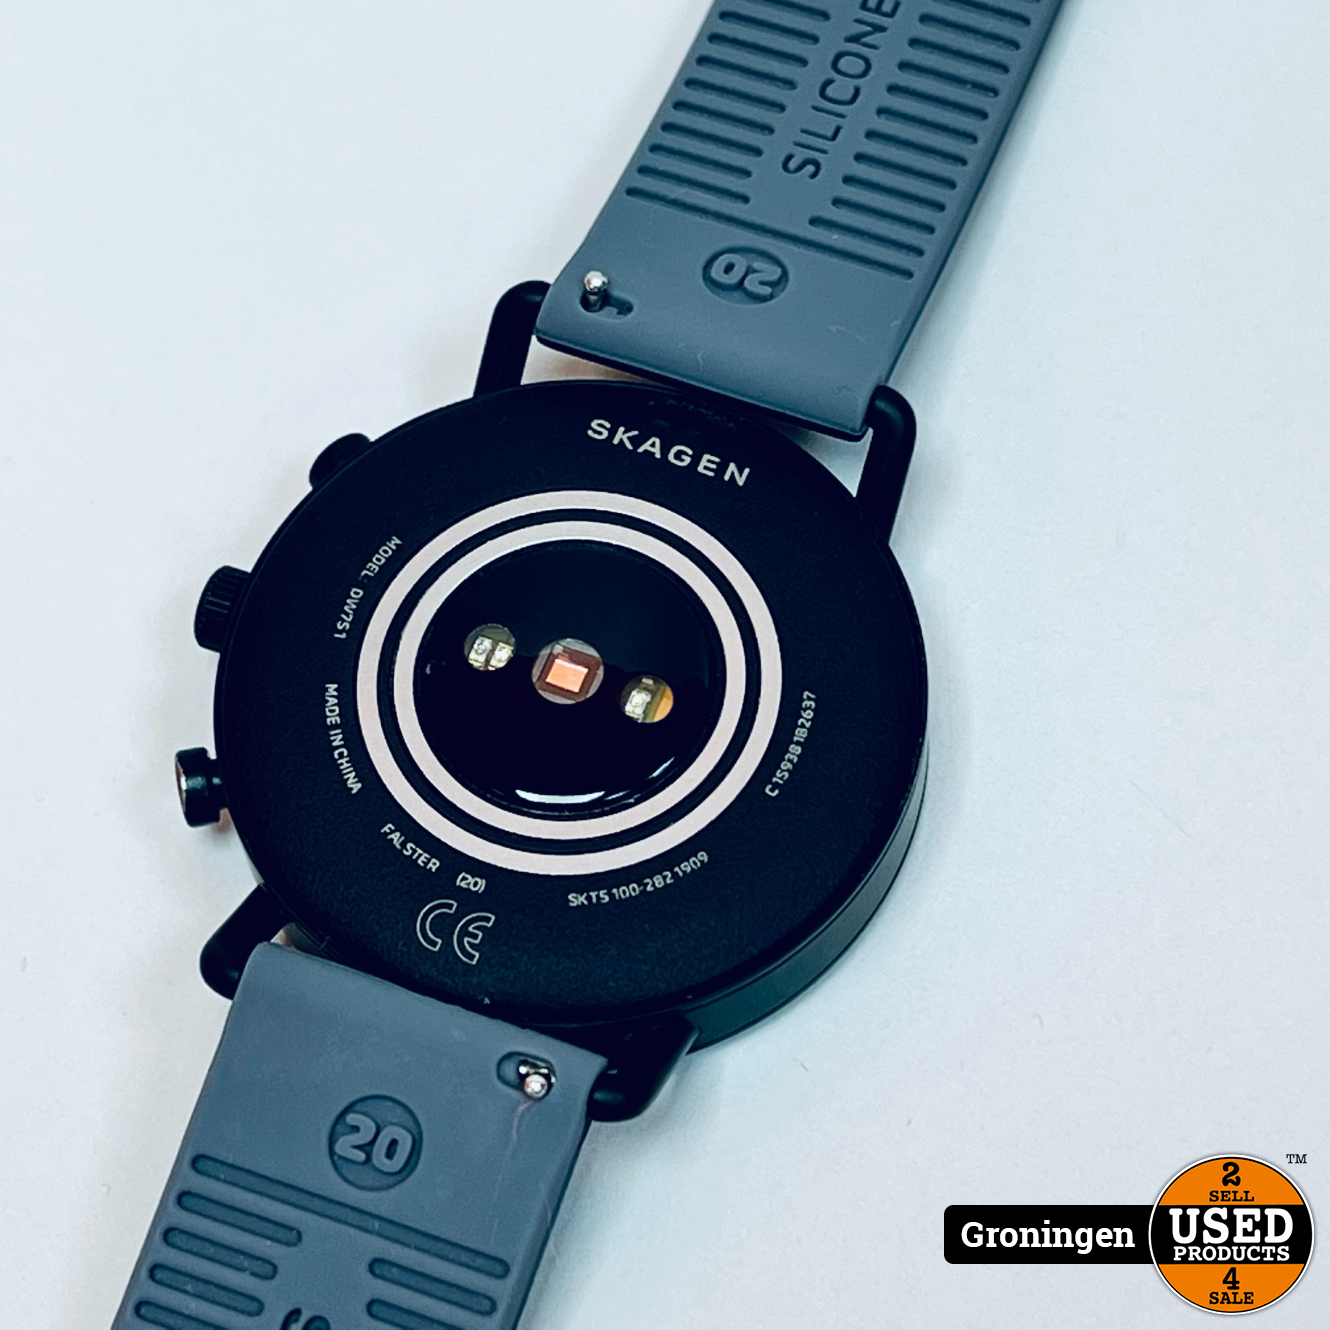 Rook vocaal Lengtegraad Skagen Connected Falster Gen 4 SKT5100 - Smartwatch - Zwart DW7S1| incl.  laadkabel - Used Products Groningen